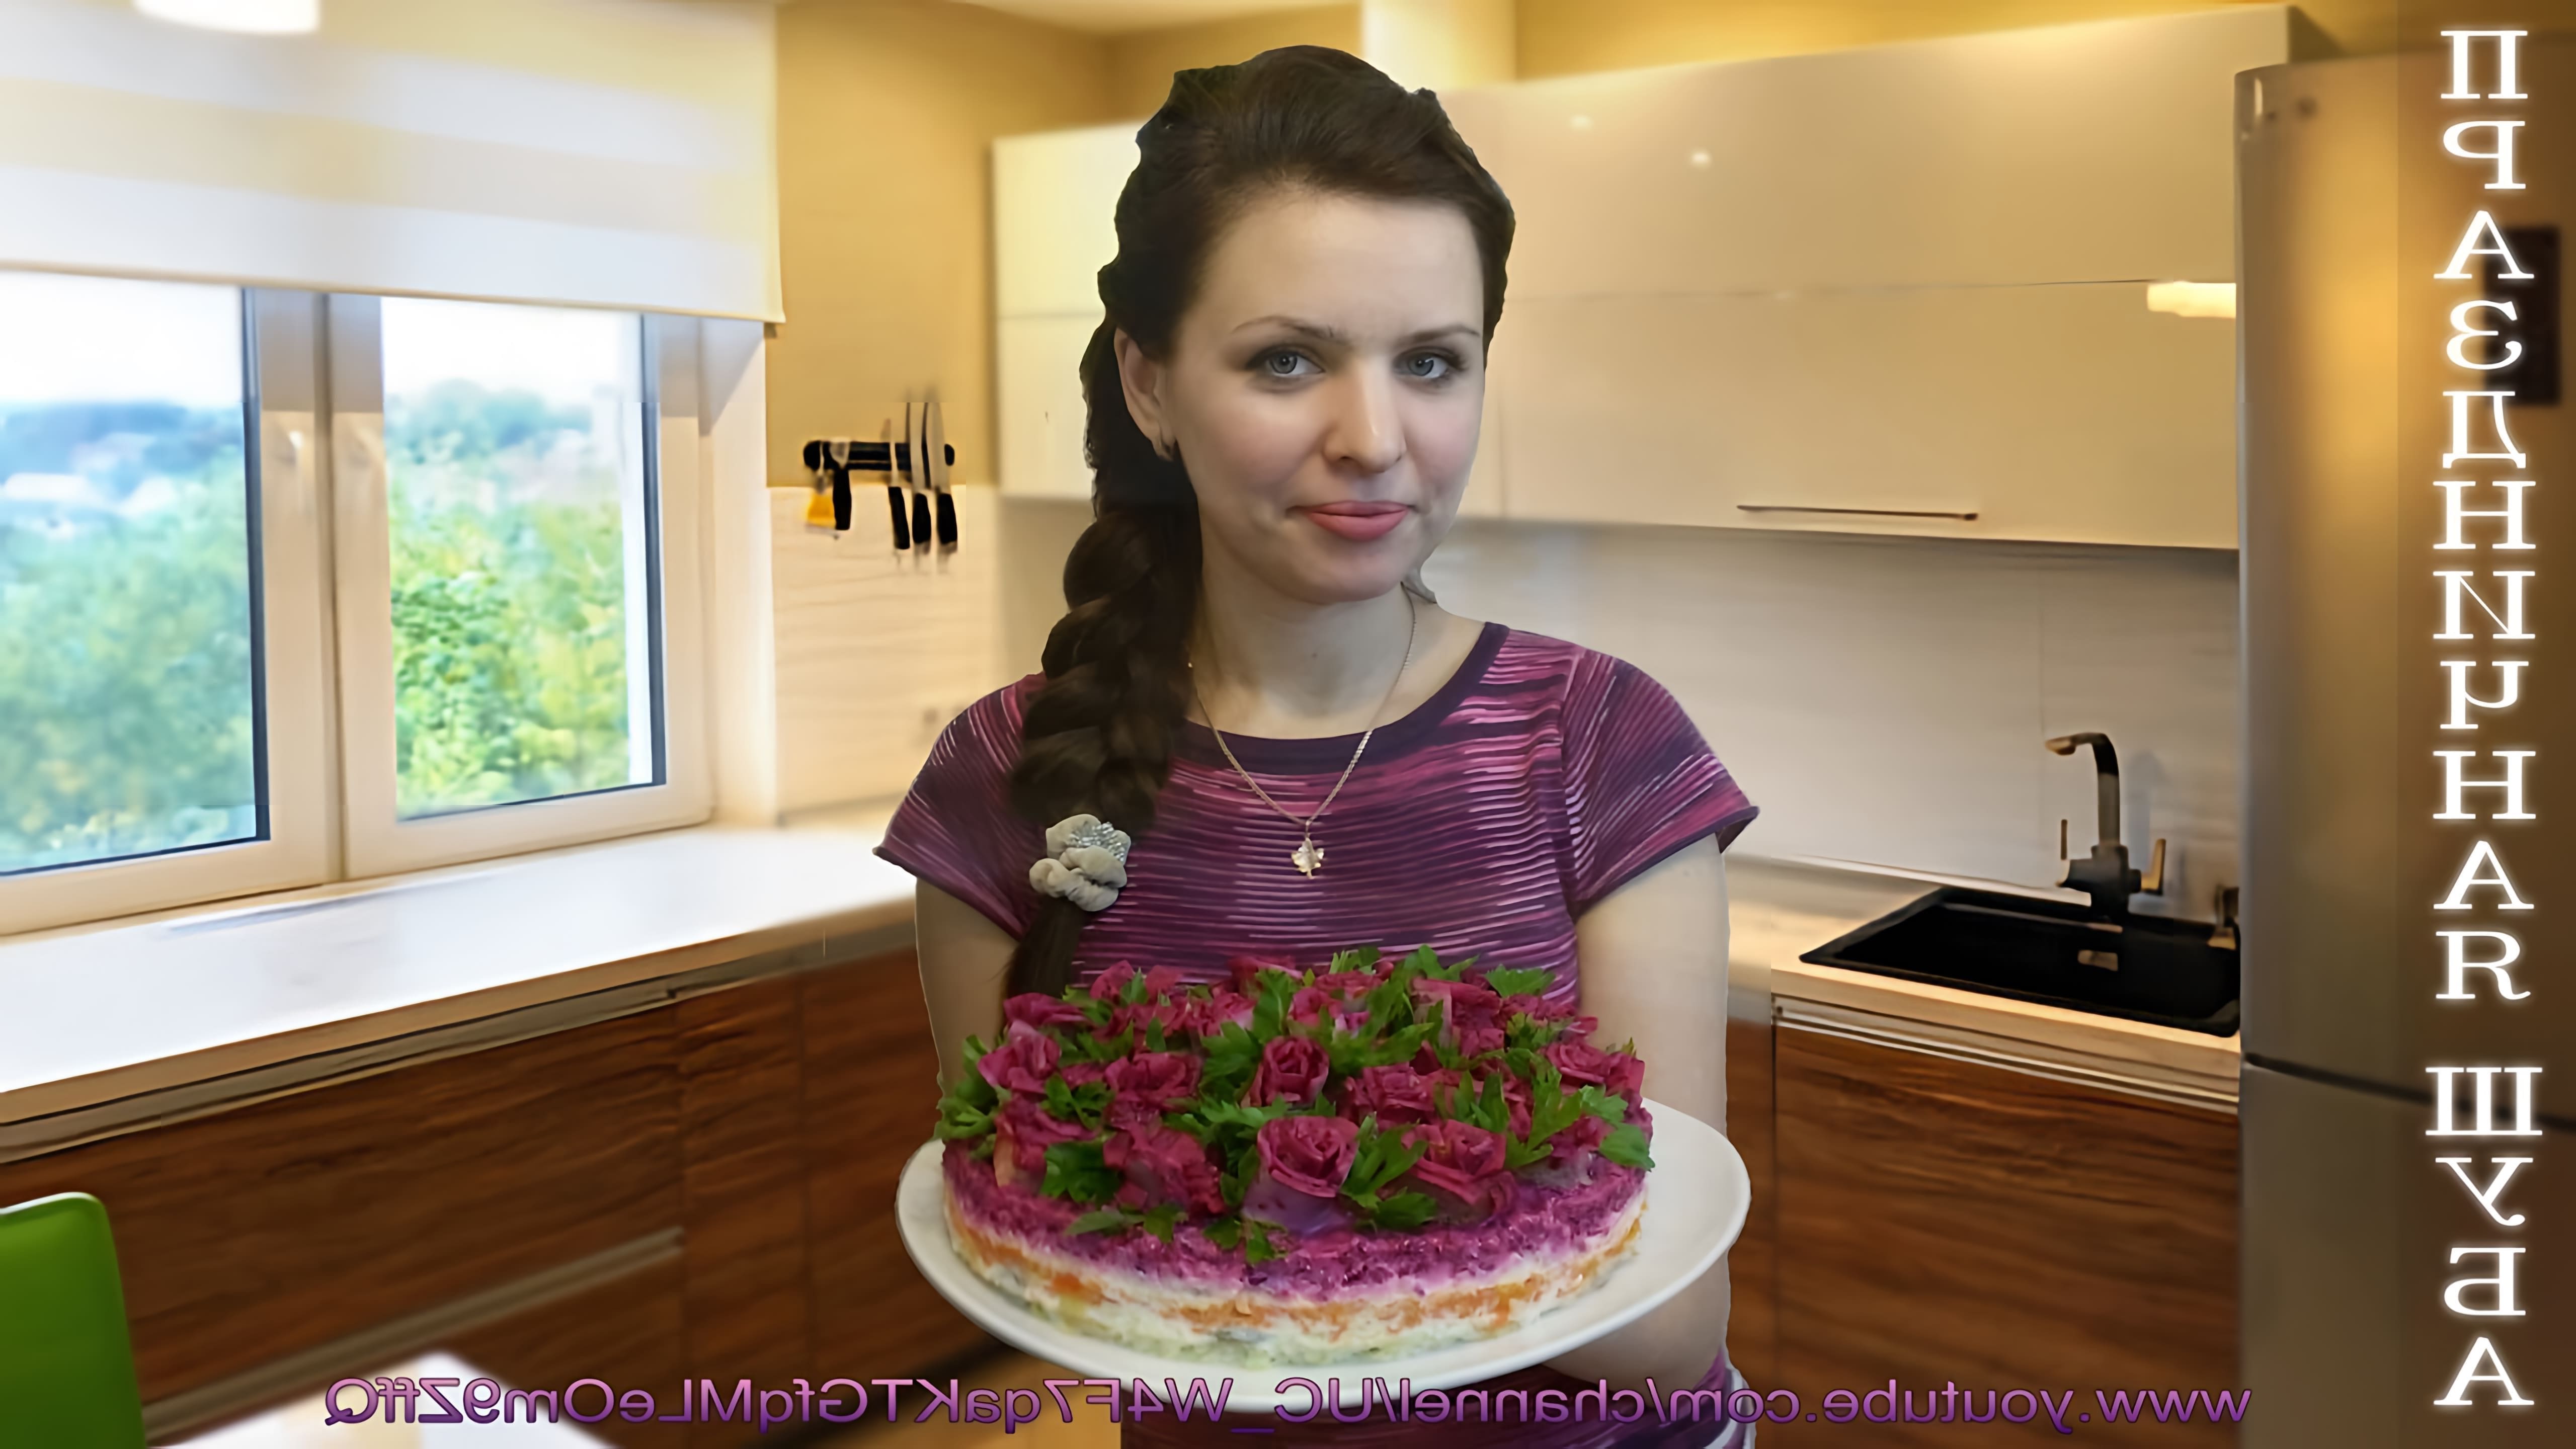 В этом видео демонстрируется рецепт приготовления салата "Шуба" и его украшения